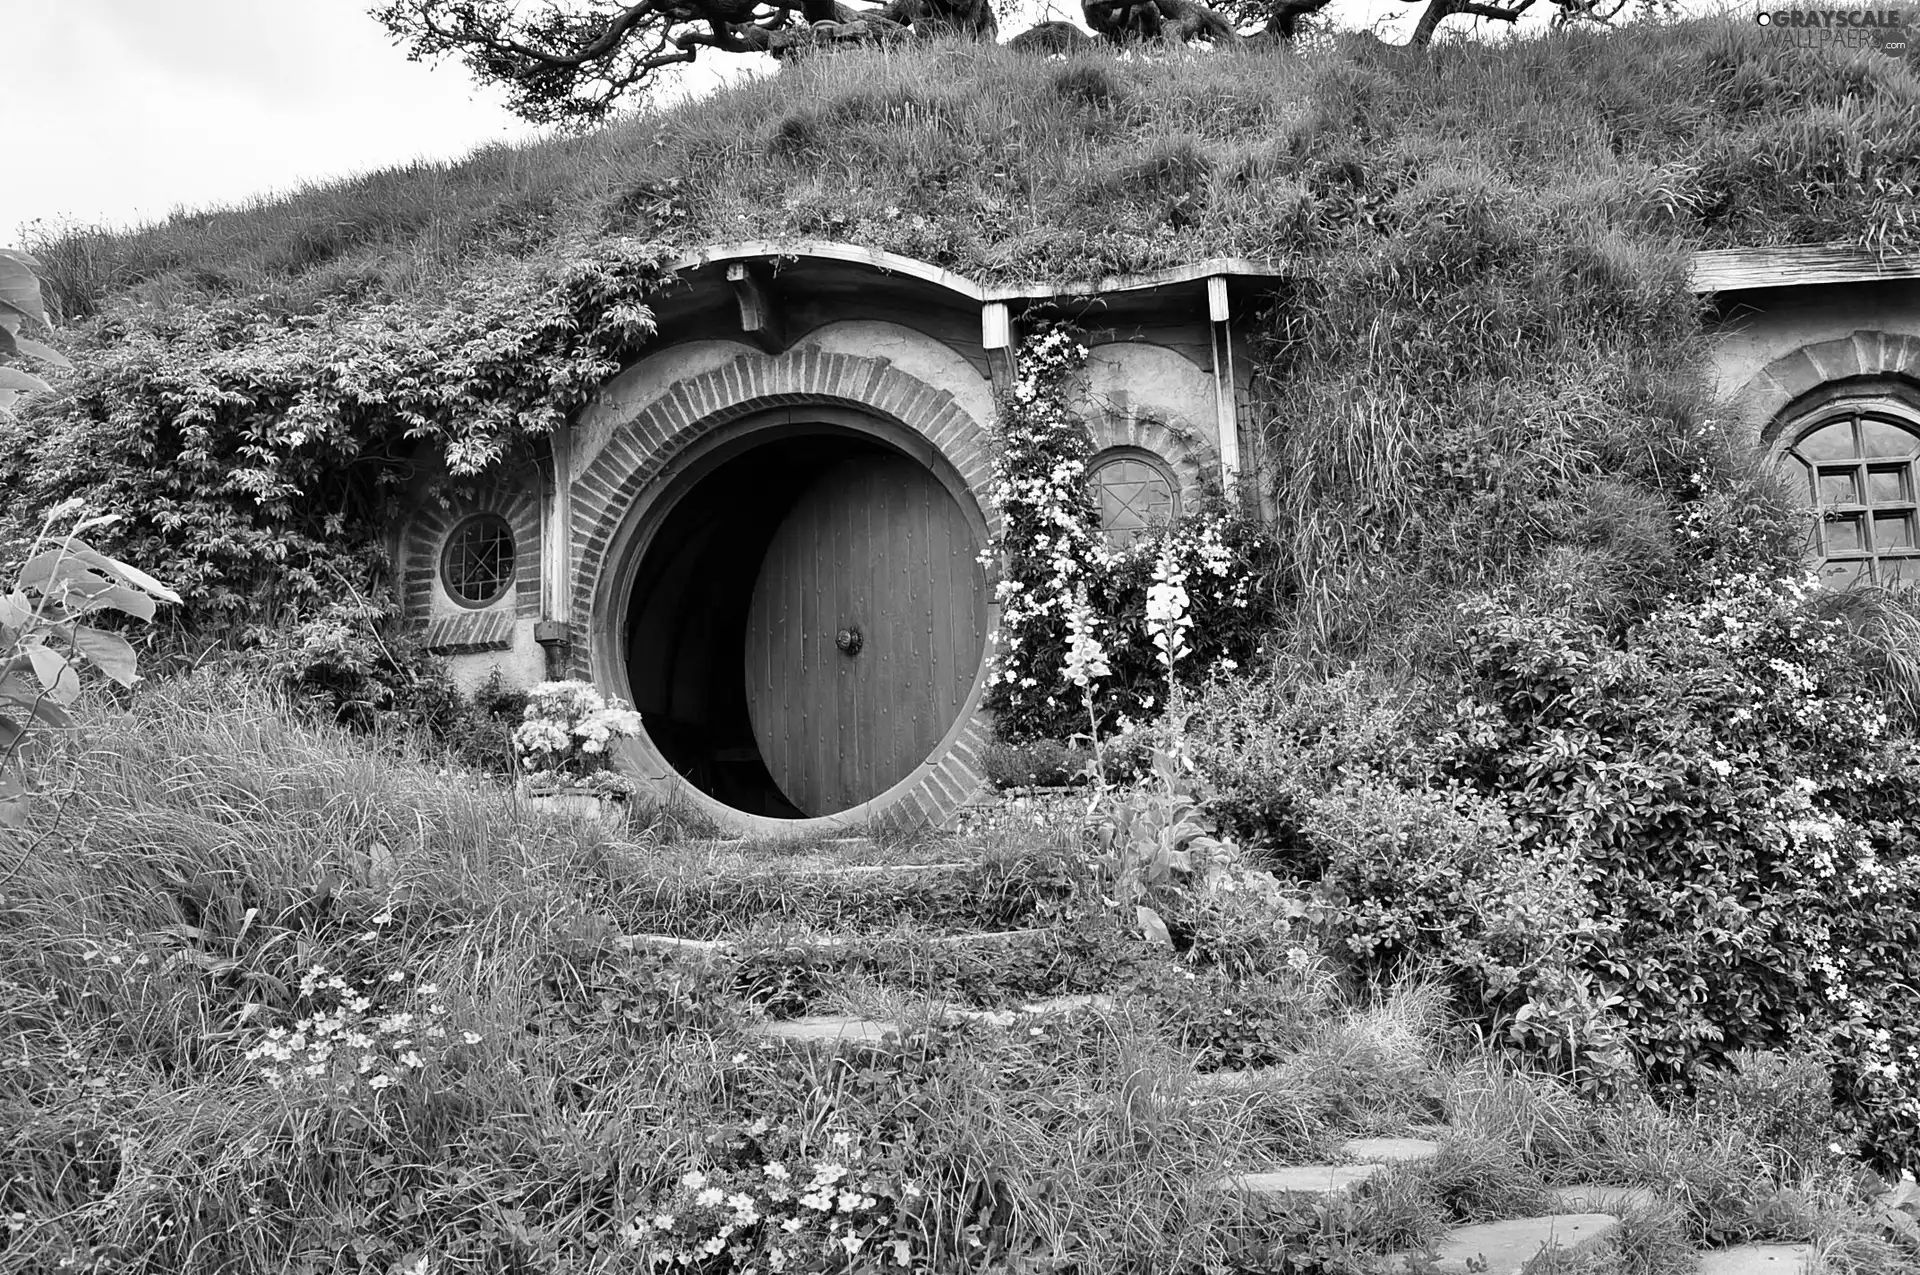 New Zeland, House Hobbit, garden